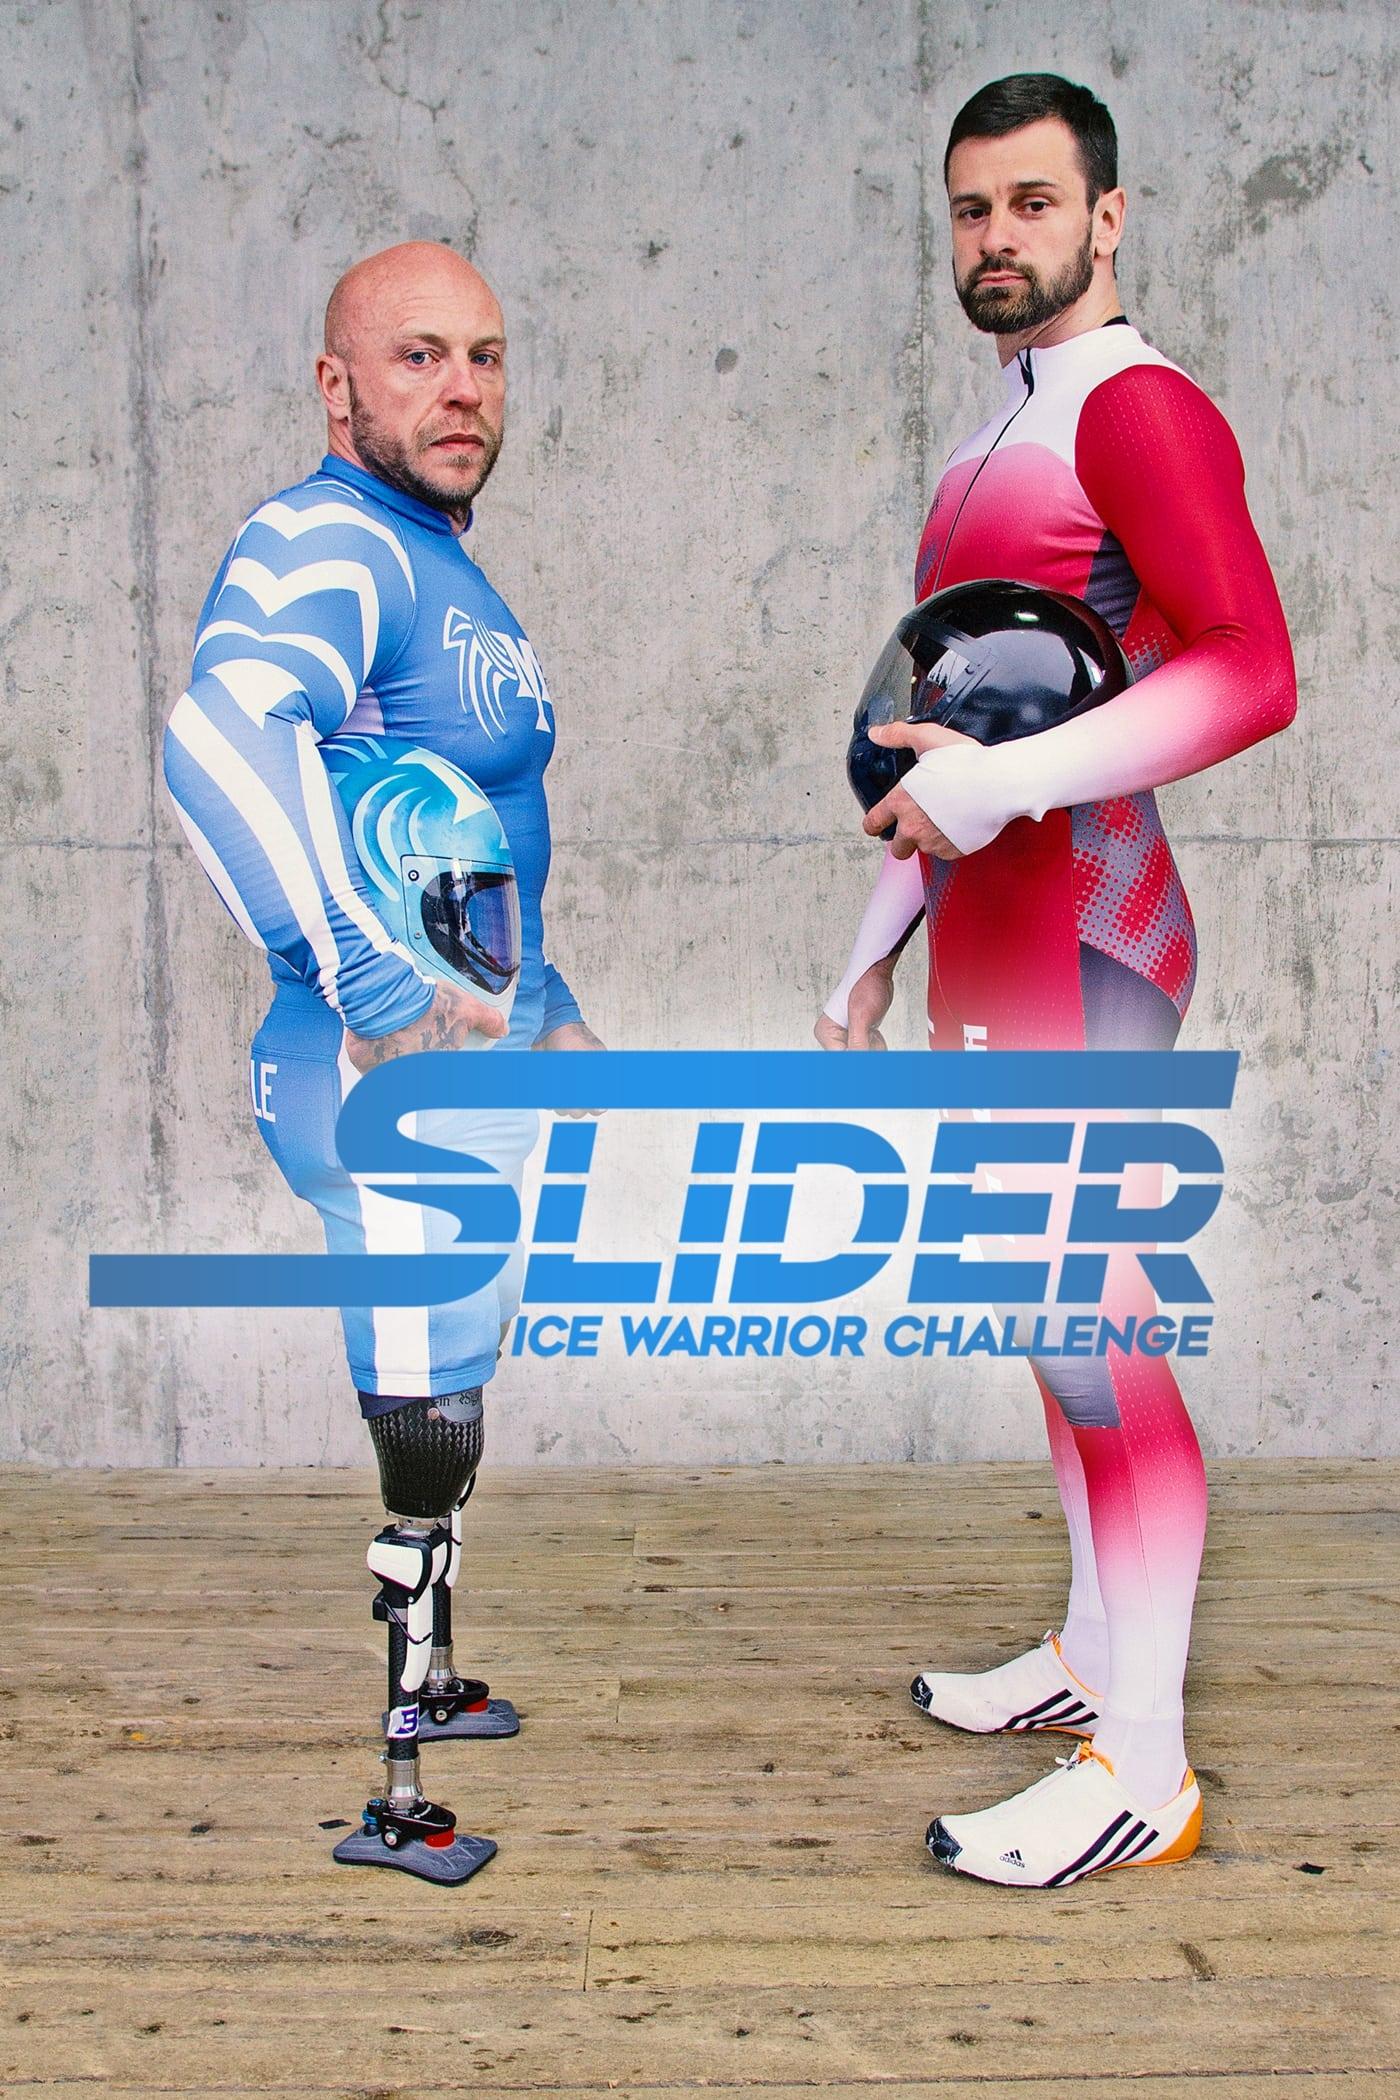 Slider: Ice Warrior Challenge poster